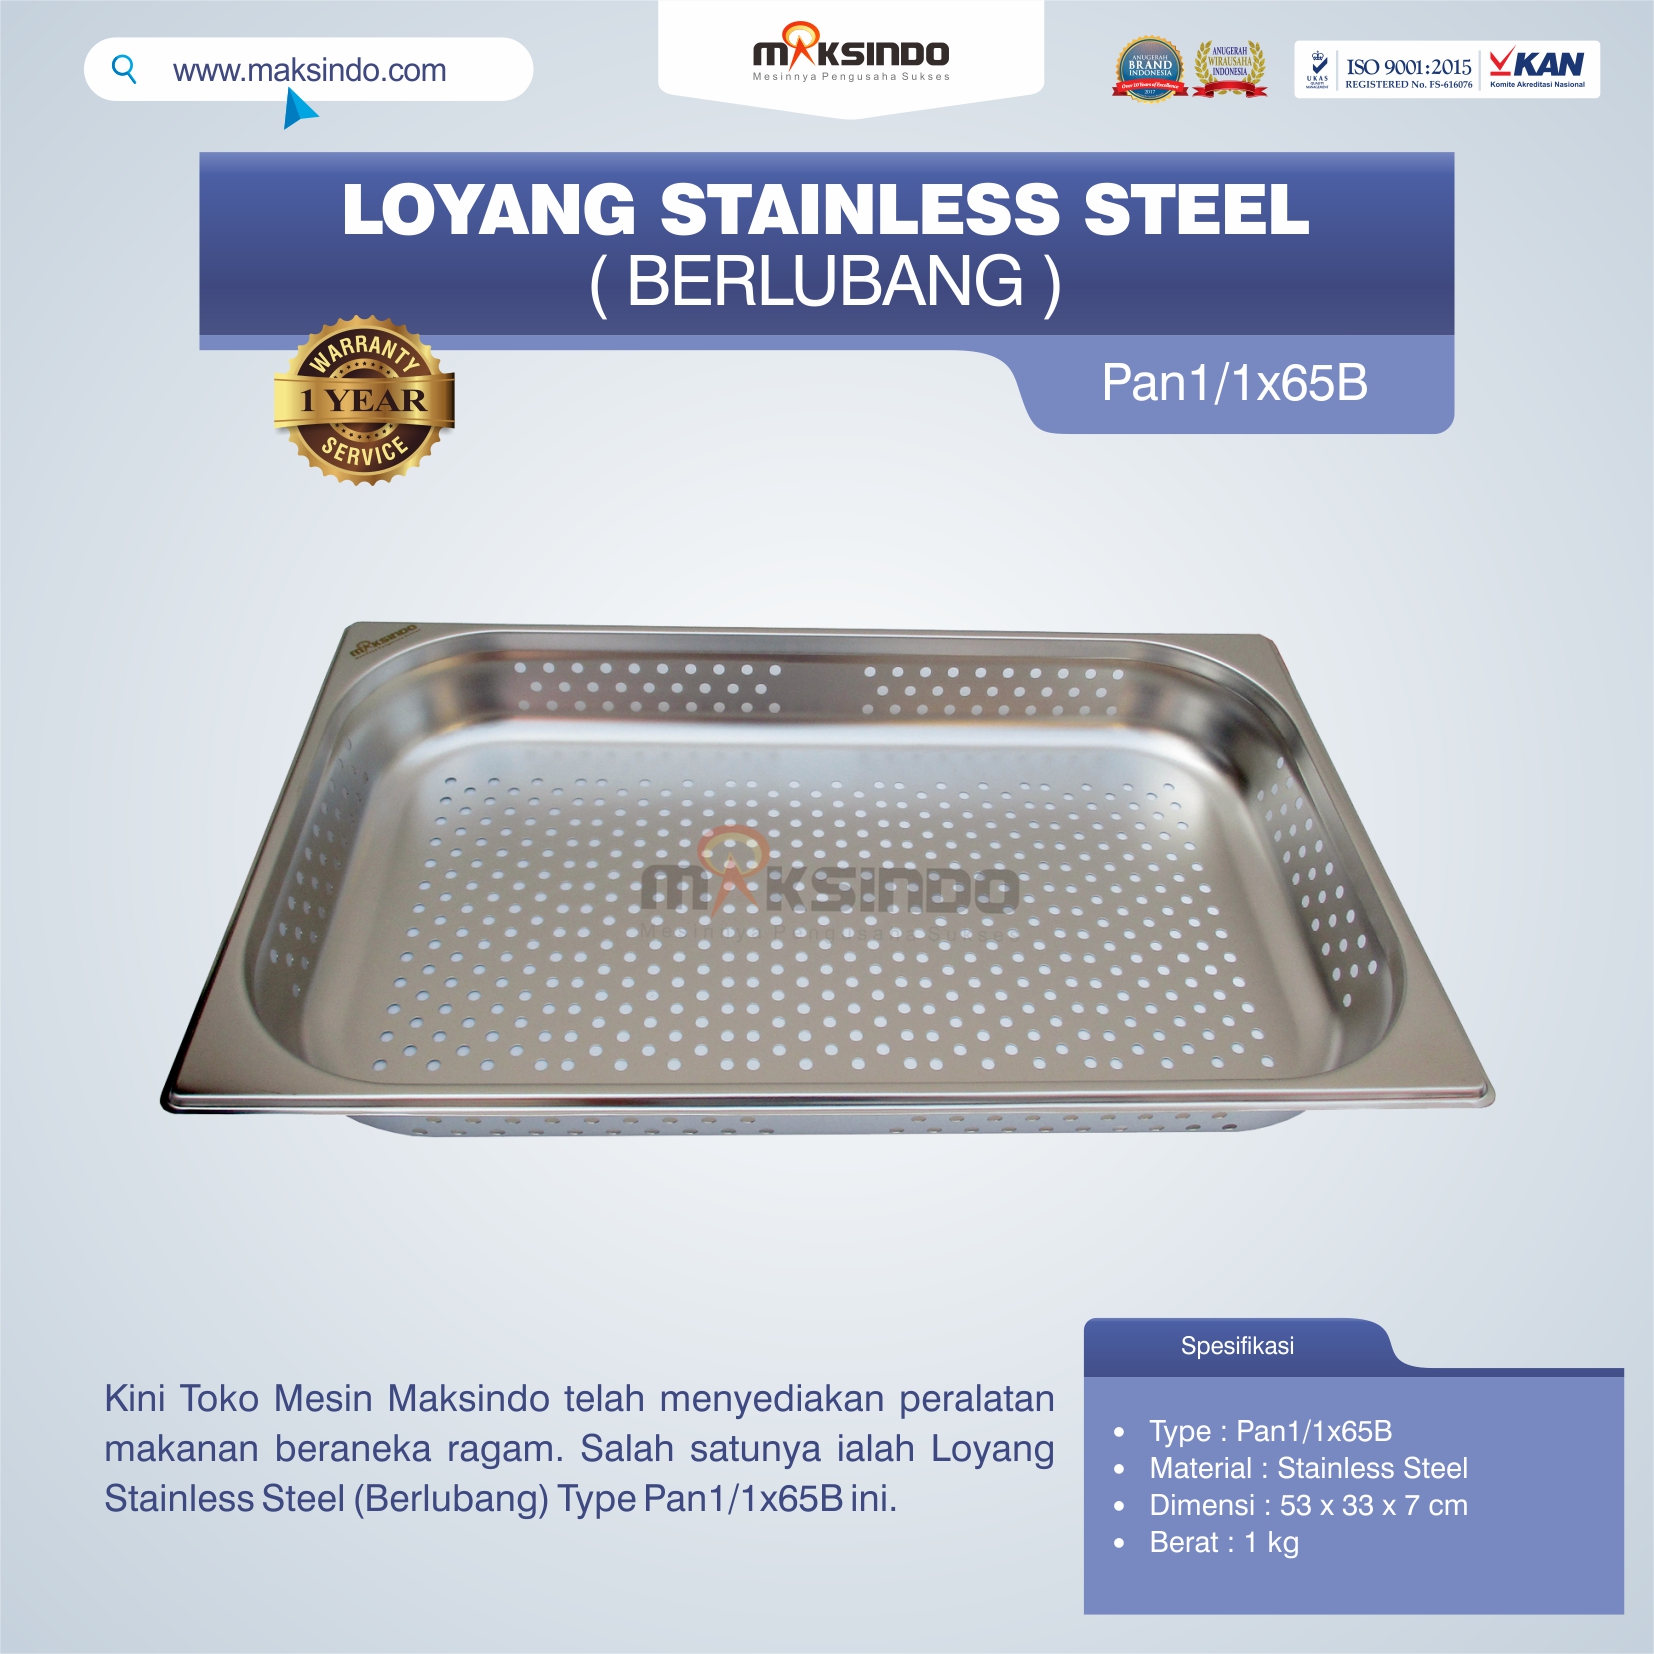 Jual Loyang Stainless Steel (Berlubang) Type Pan1/1x65B di Pekanbaru